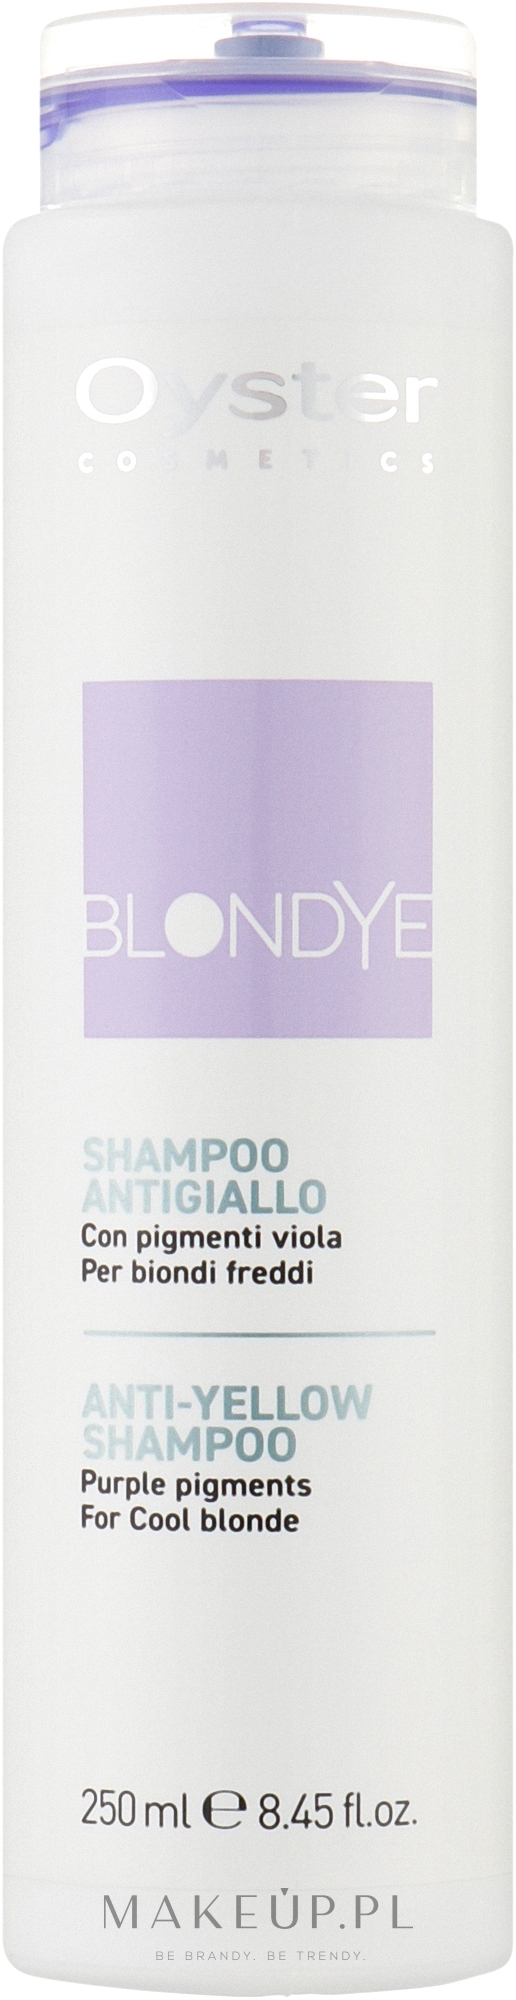 Szampon neutralizujący żółty odcień włosów - Oyster Cosmetics Blondye Anti-Yellow Shampoo — Zdjęcie 250 ml